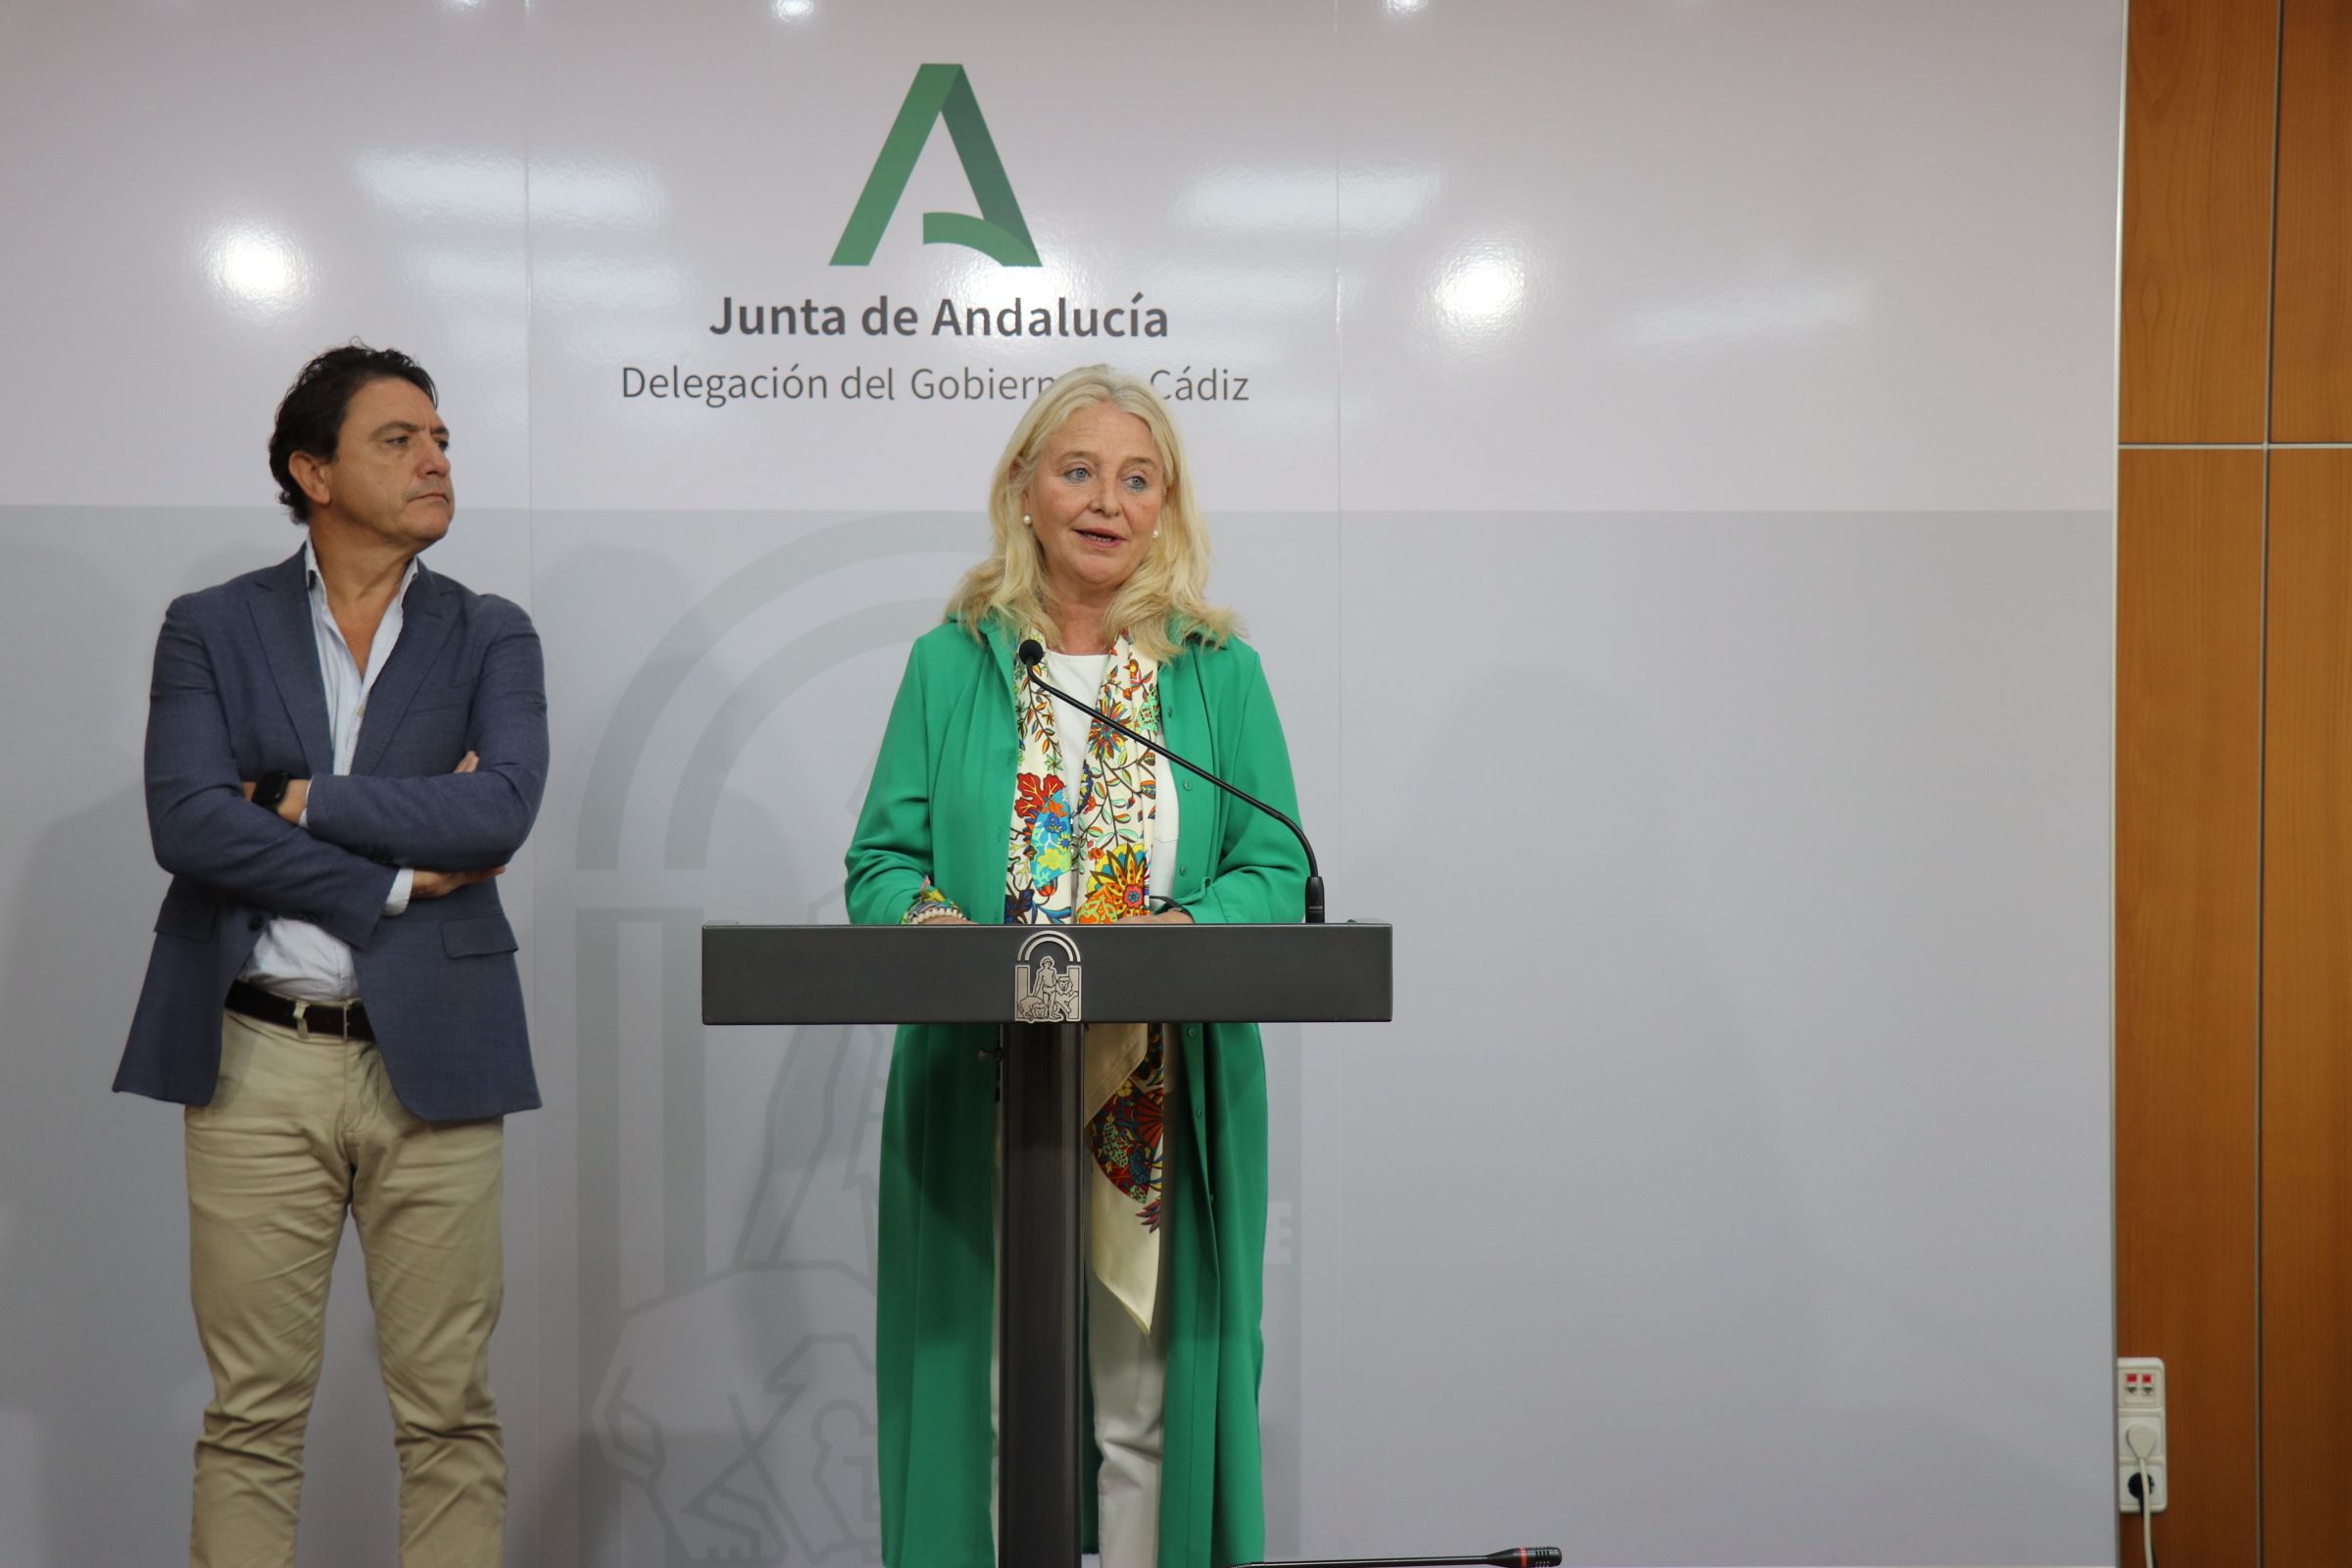 La Junta ha generado 644 contratos para jóvenes en la provincia de Cádiz a través del programa de empleo Ahora Joven.